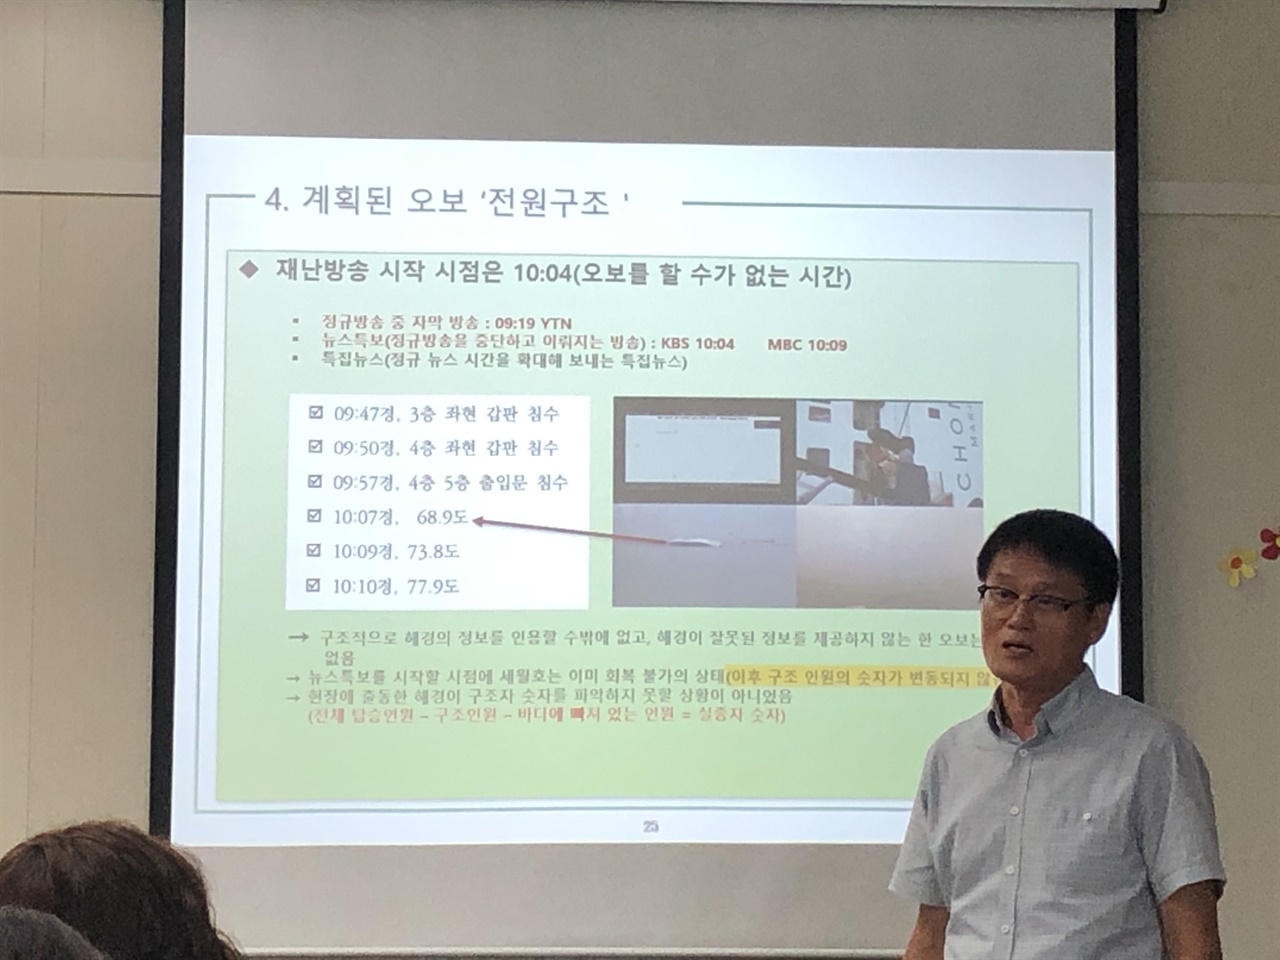 <4.16세월호 사건 기록연구- 의혹과 진실> 저자 강연 중인 박종대씨.